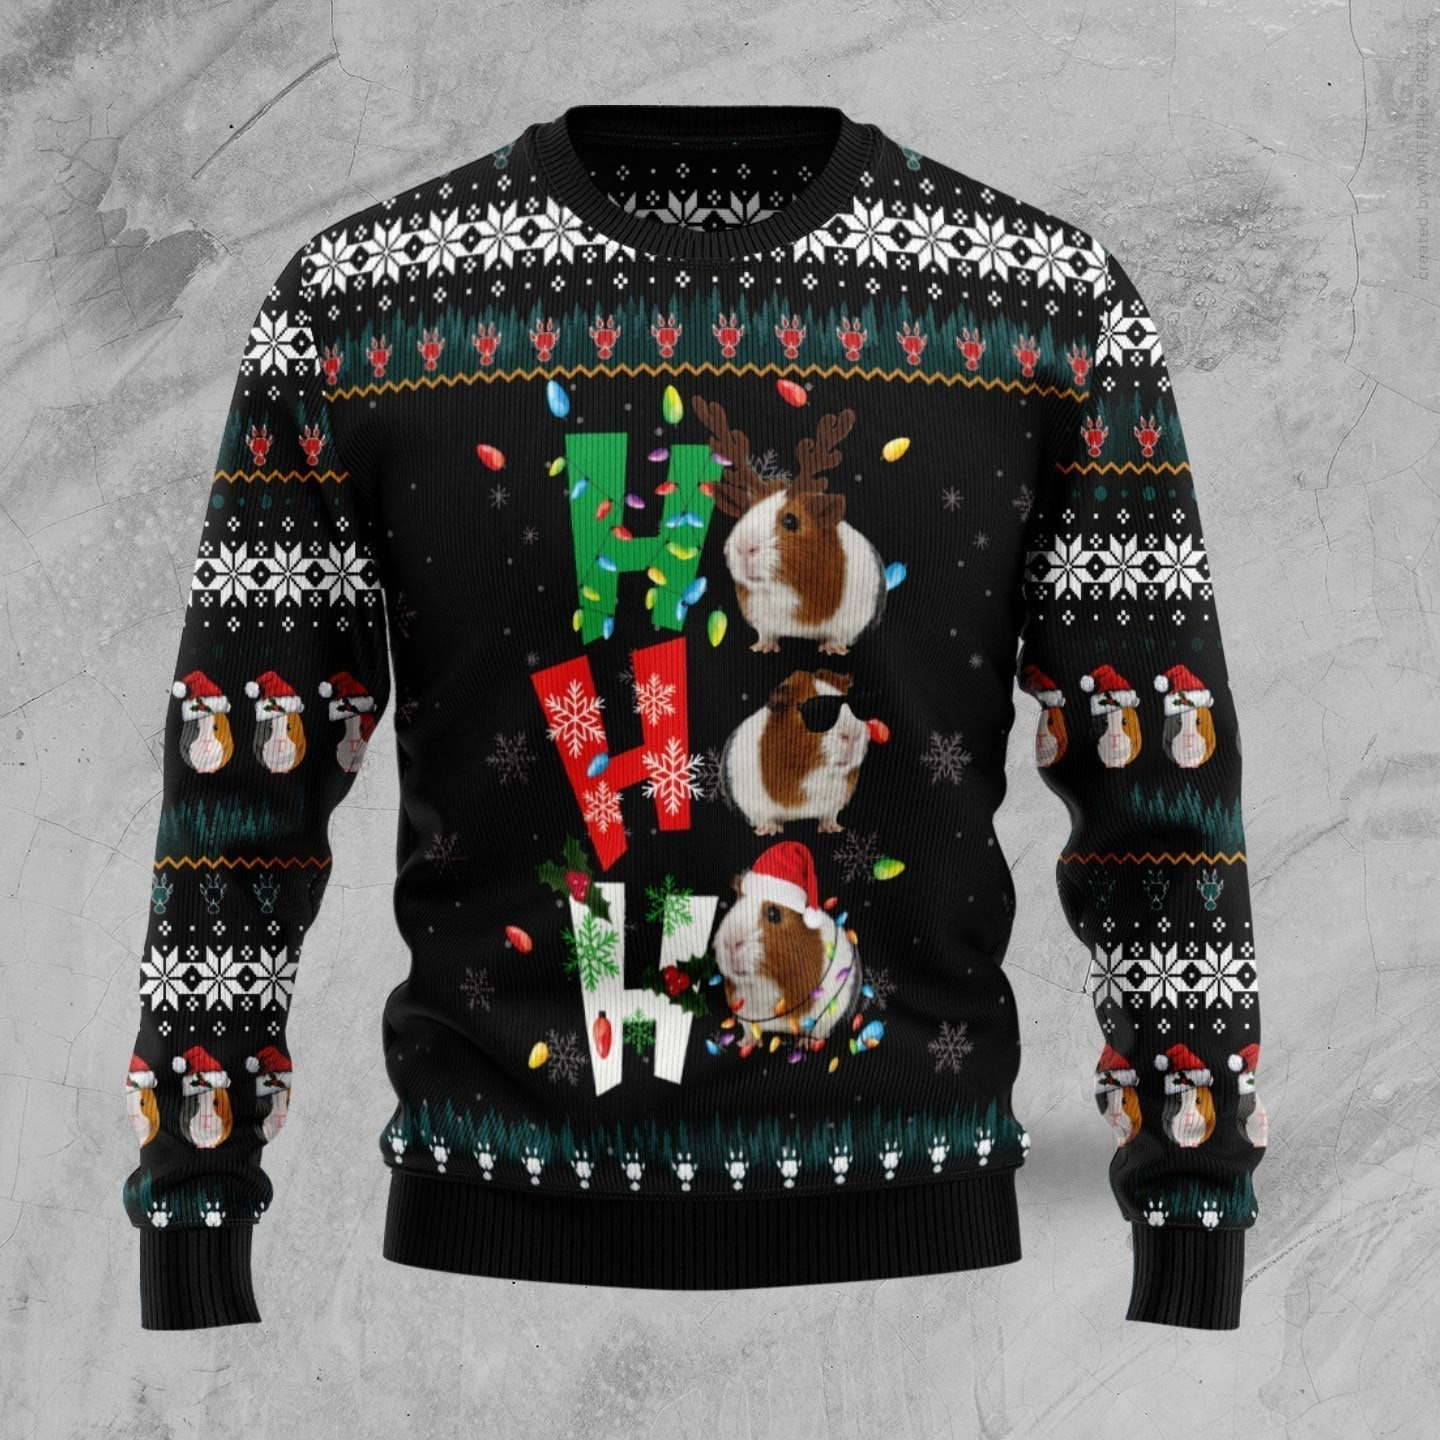 Hohoho Guinea Pig Ugly Christmas Sweater